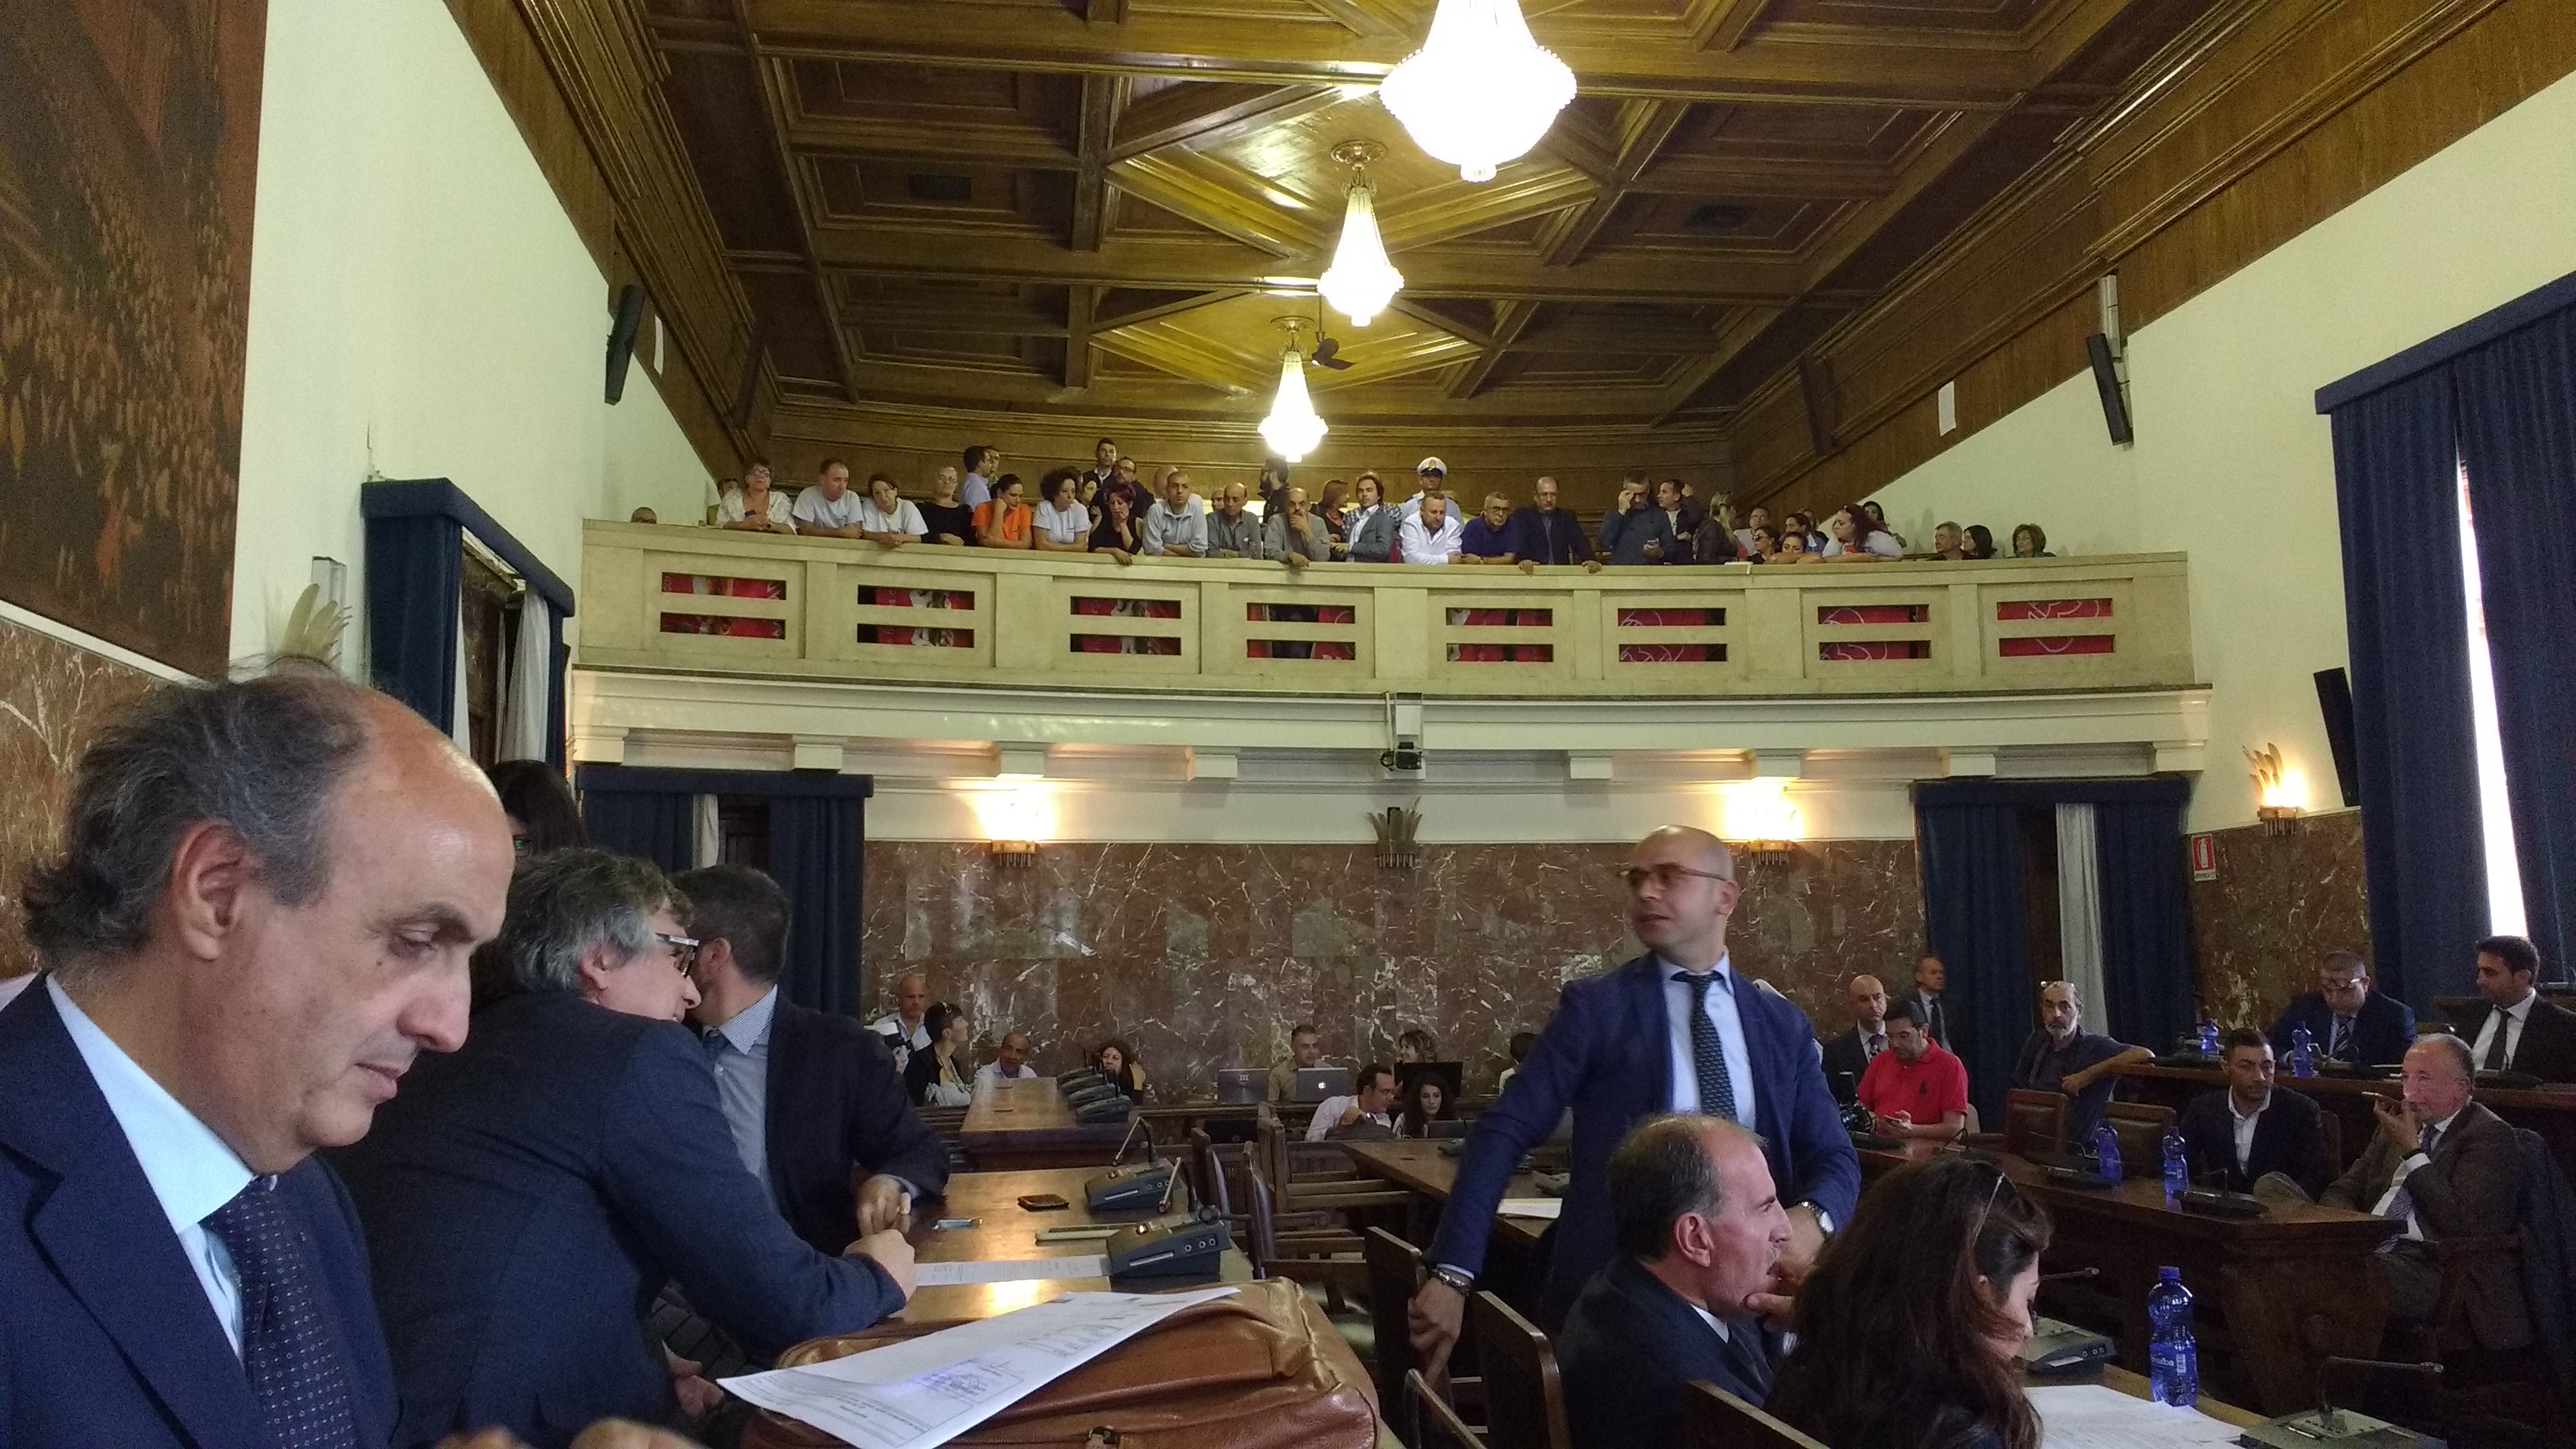 Se la votazione "Salva – Messina" non sarà unanime, tra 48 ore De Luca farà valigie o offre 15 giorni per alternative. Russo Pd: "E i creditori?"